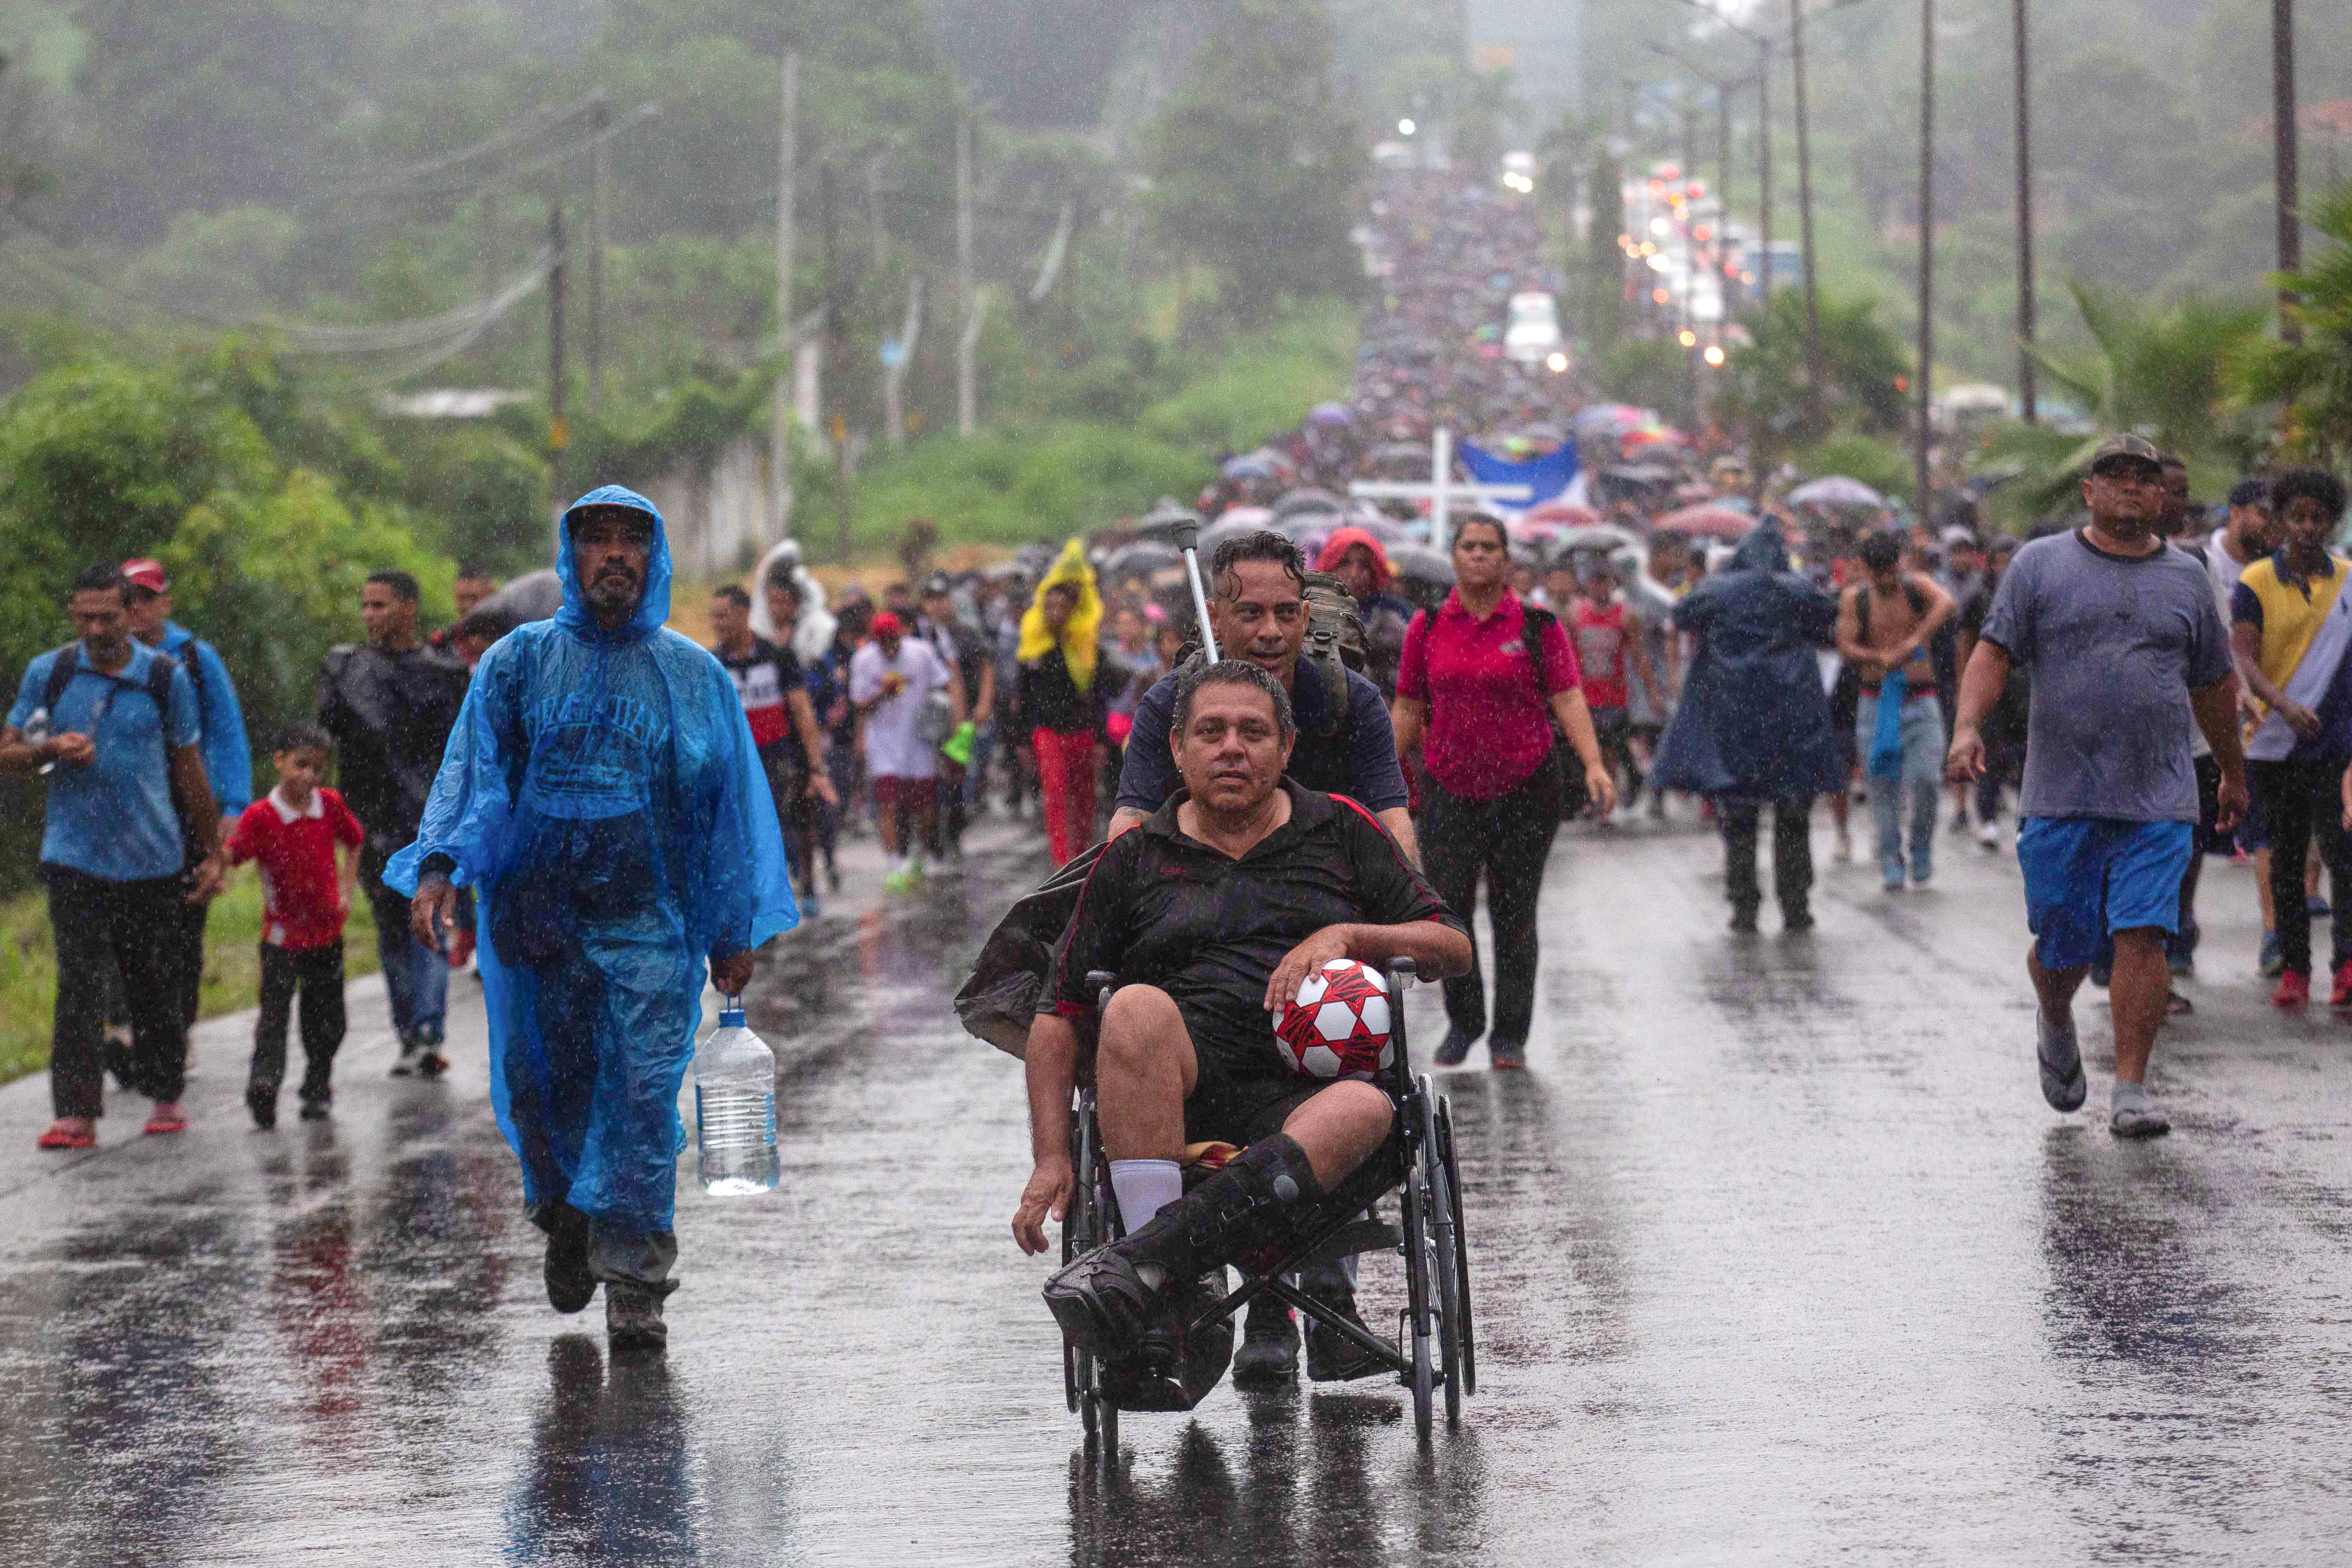 Un migrante en silla de ruedas sostiene un balón mientras es empujado por un compañero, durante una caravana para cruzar el país y llegar a la frontera con Estados Unidos, mientras los líderes regionales se reúnen en Los Ángeles para discutir la migración y otros temas, en Tapachula, México, el 6 de junio de 2022. REUTERS/Quetzalli Nicte-Ha